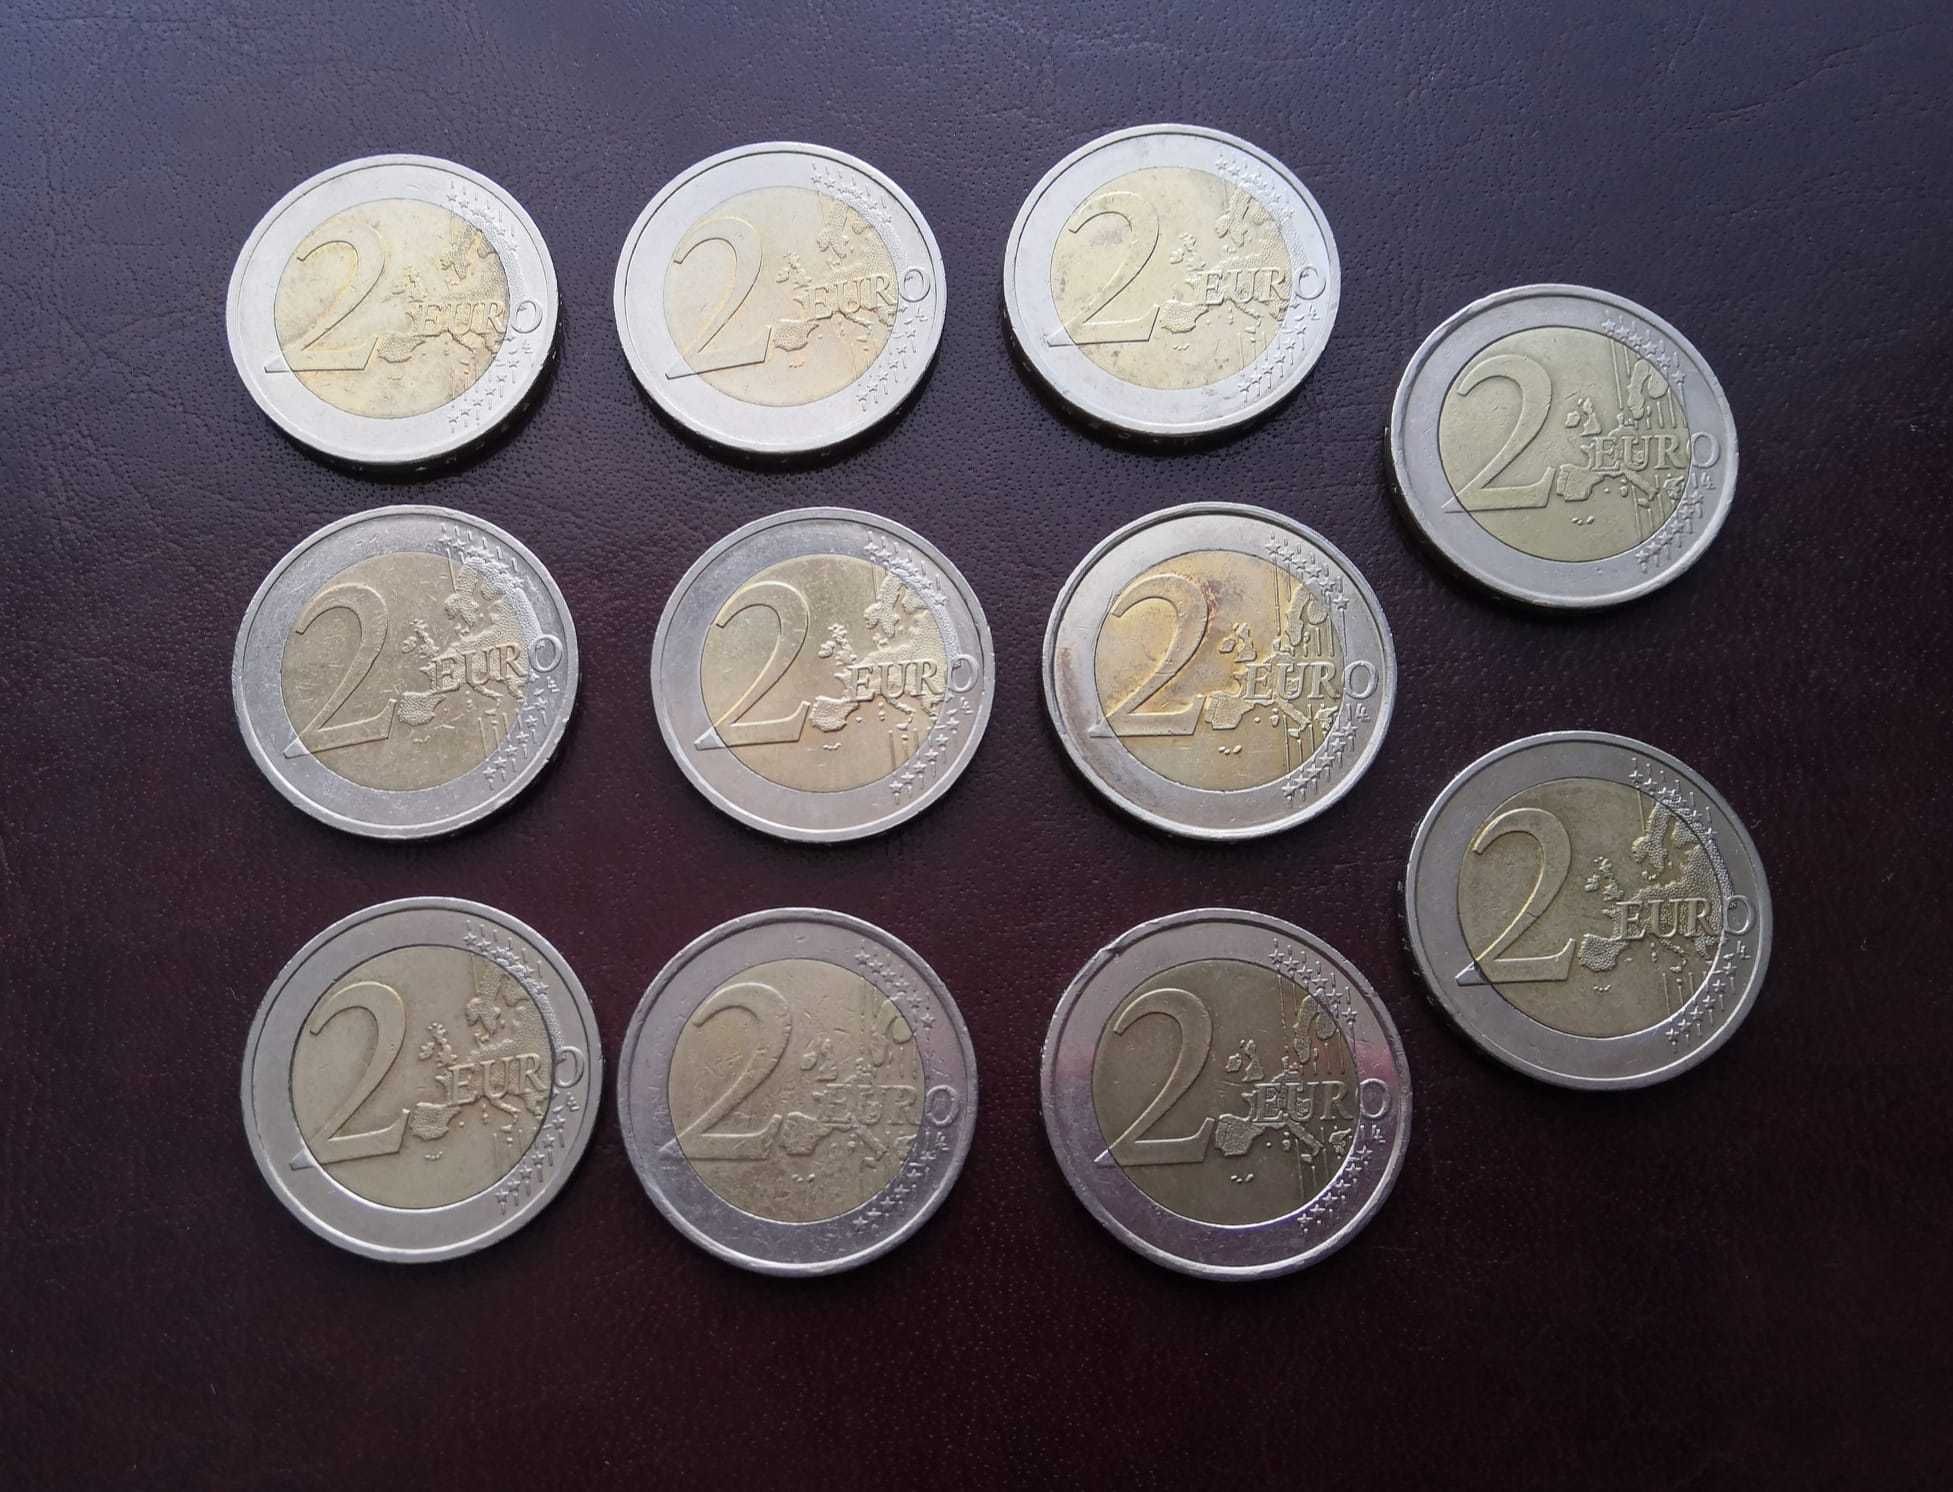 2 euro zestaw rzadszych monet 11 szt